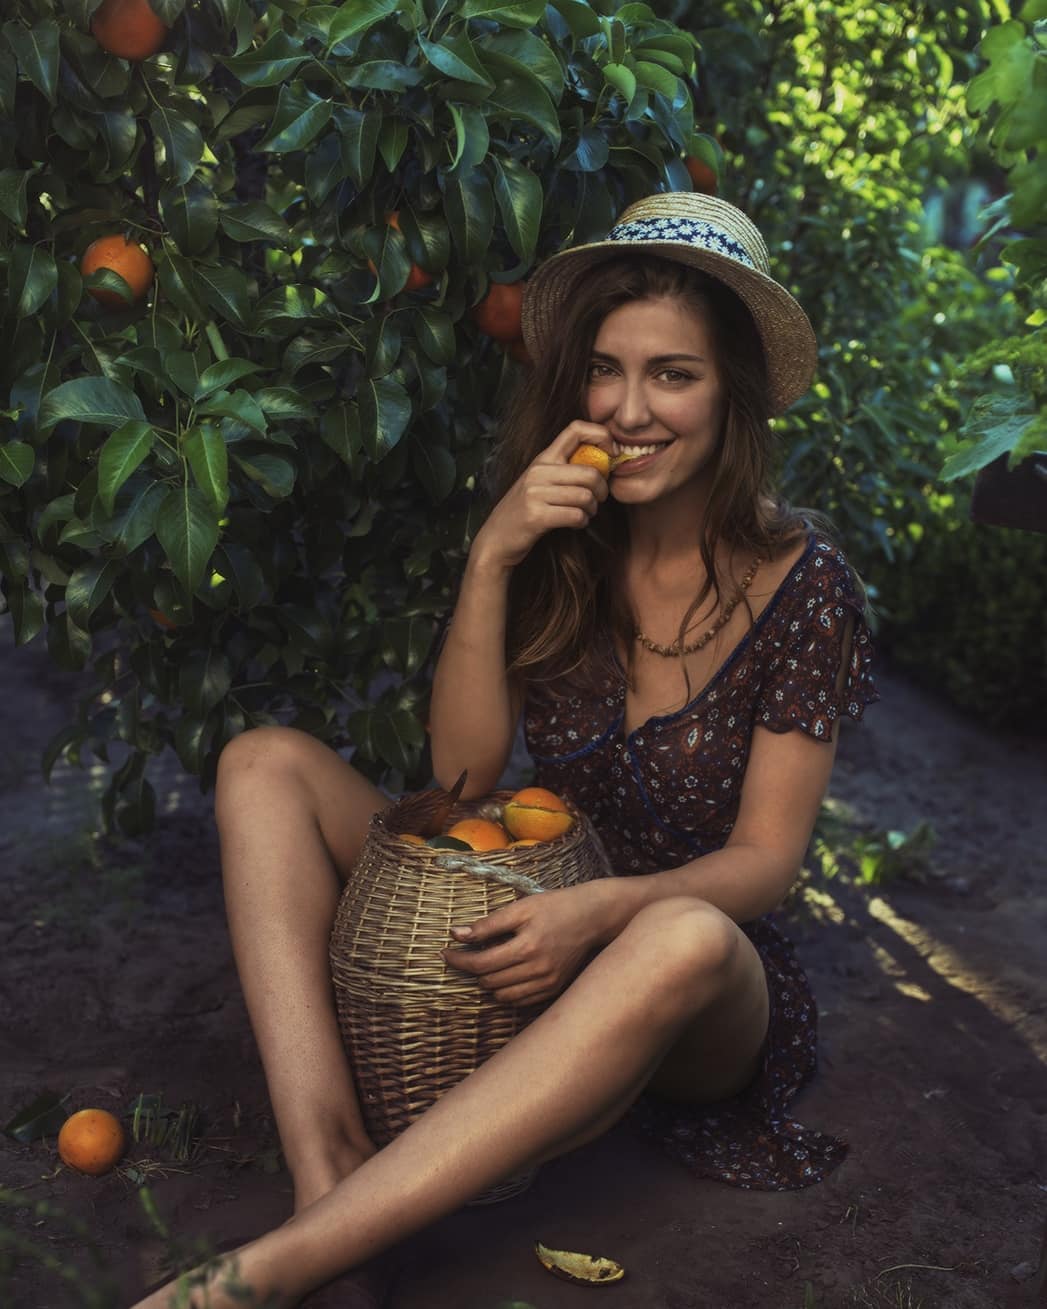 People 1047x1309 David Dubnitskiy model women outdoors fruit smiling sitting hat women